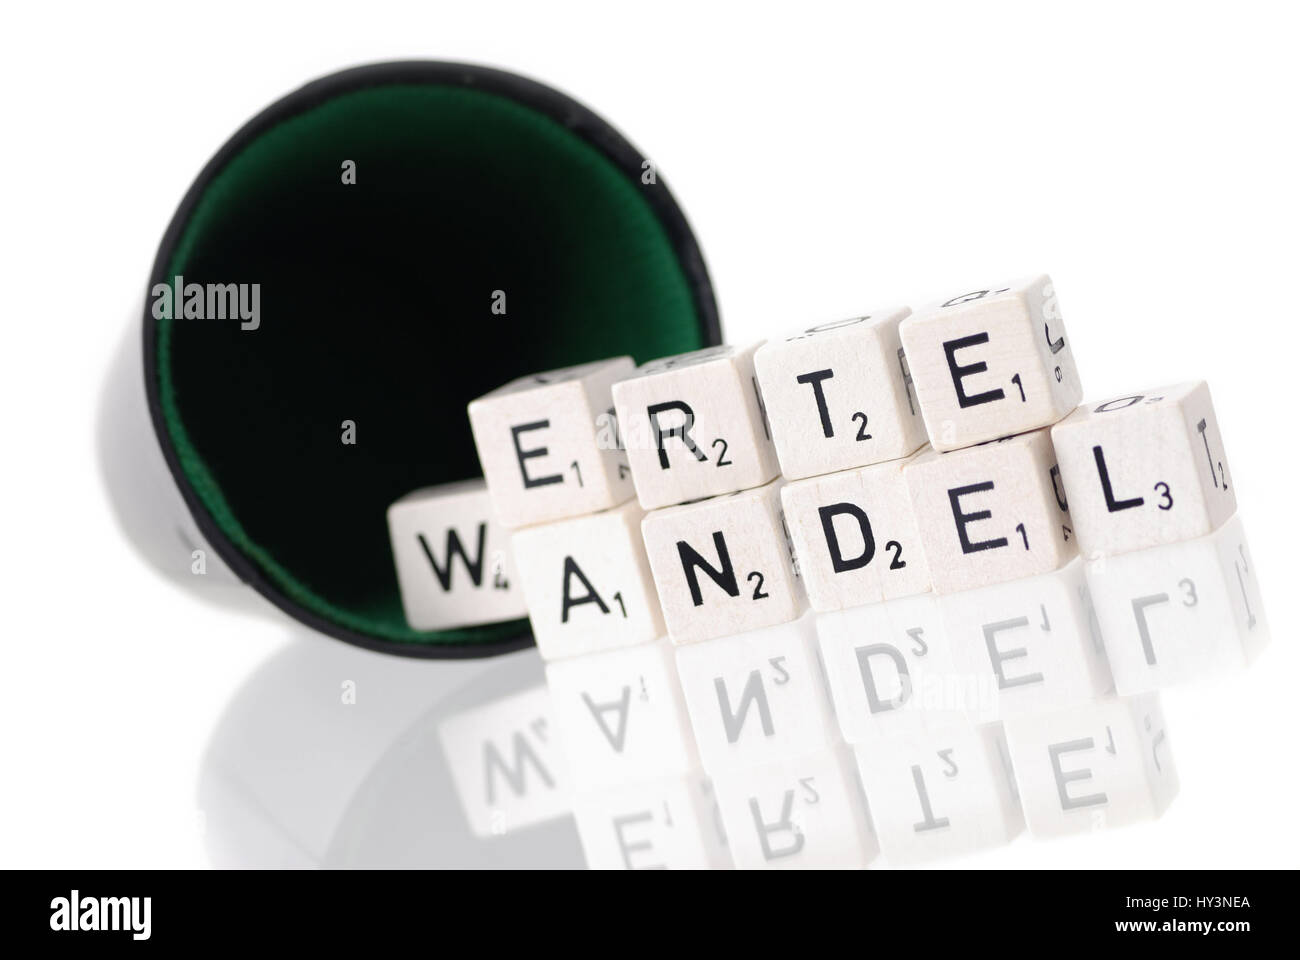 Dice cup with letter cube, stroke value change, Würfelbecher mit Buchstabenwürfel, Schriftzug Wertewandel Stock Photo